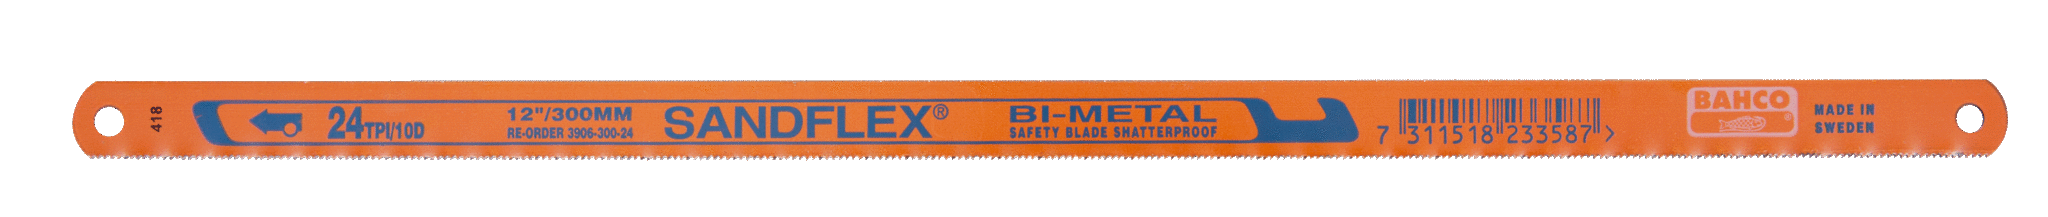 Биметаллические ножовочные полотна SANDFLEX®. Новое биметаллическое полотно SANDFLEX с повышеным содержанием кoбальта BAHCO 3906-250-24-5P